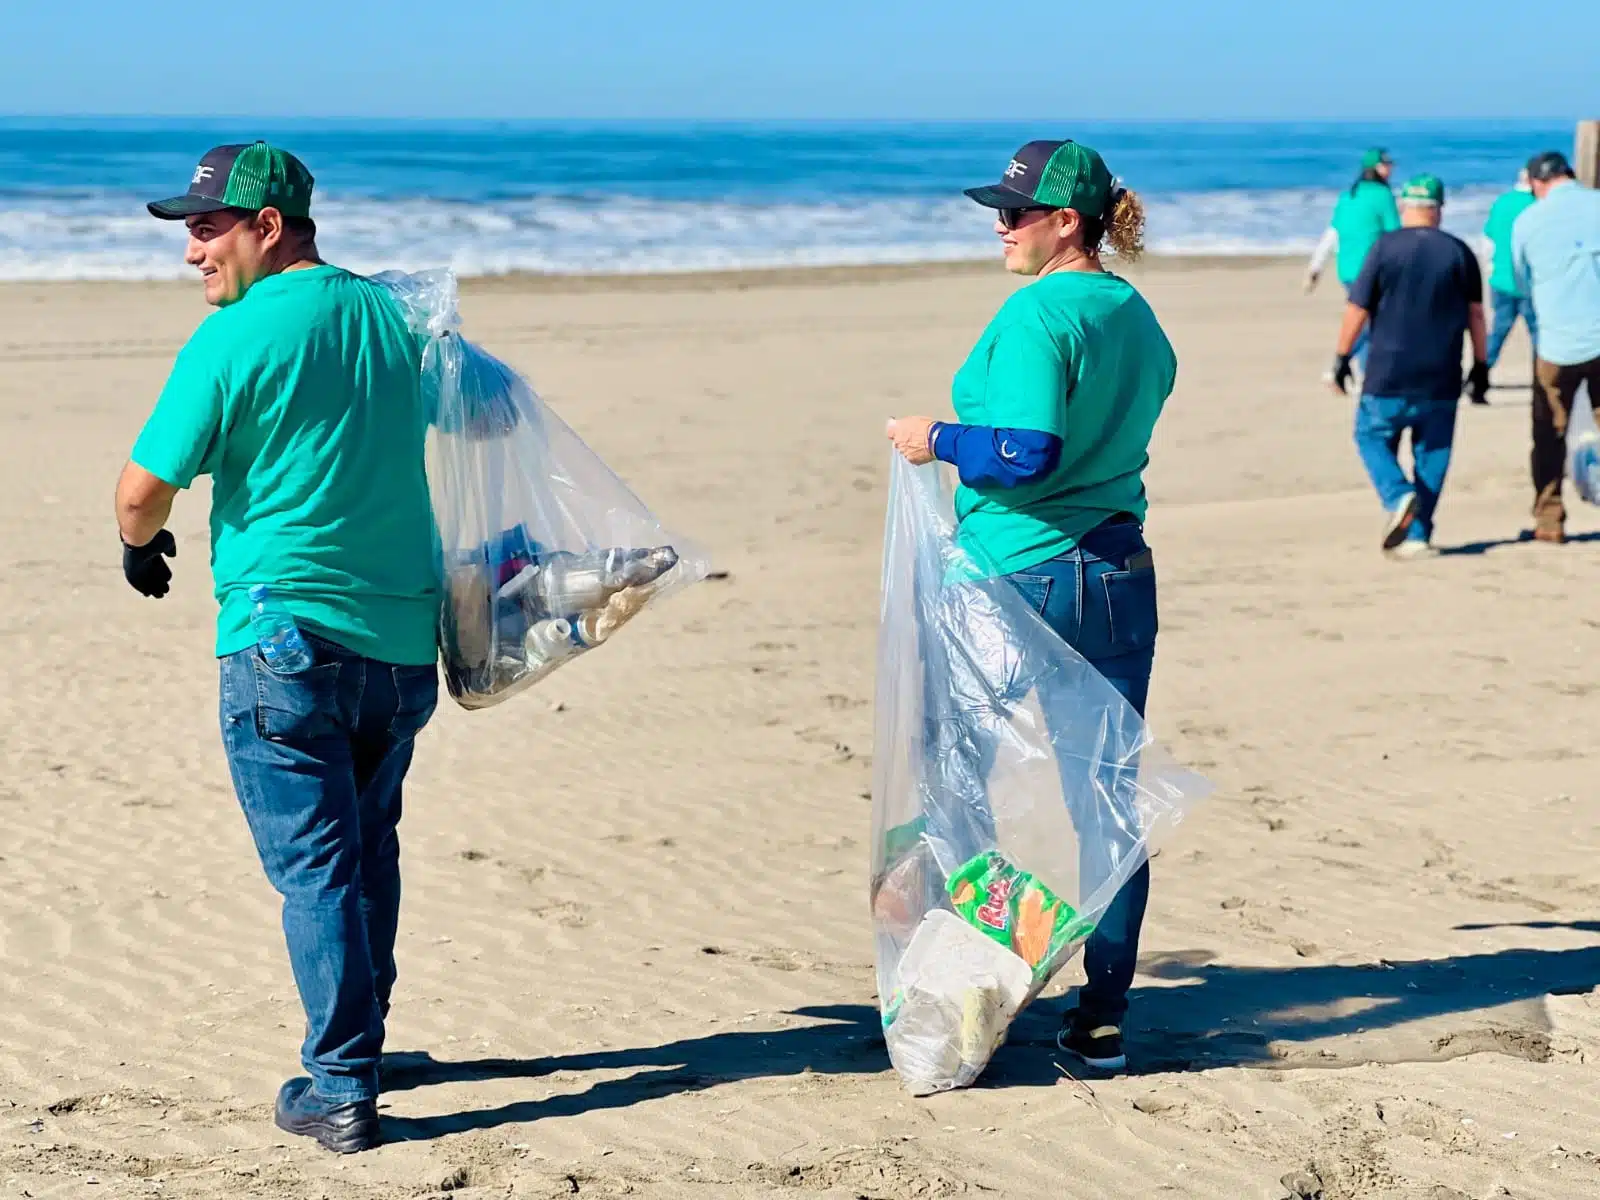 Campaña de limpieza en playa Las Glorias, Guasave./ Foto: Jonatan Espinoza